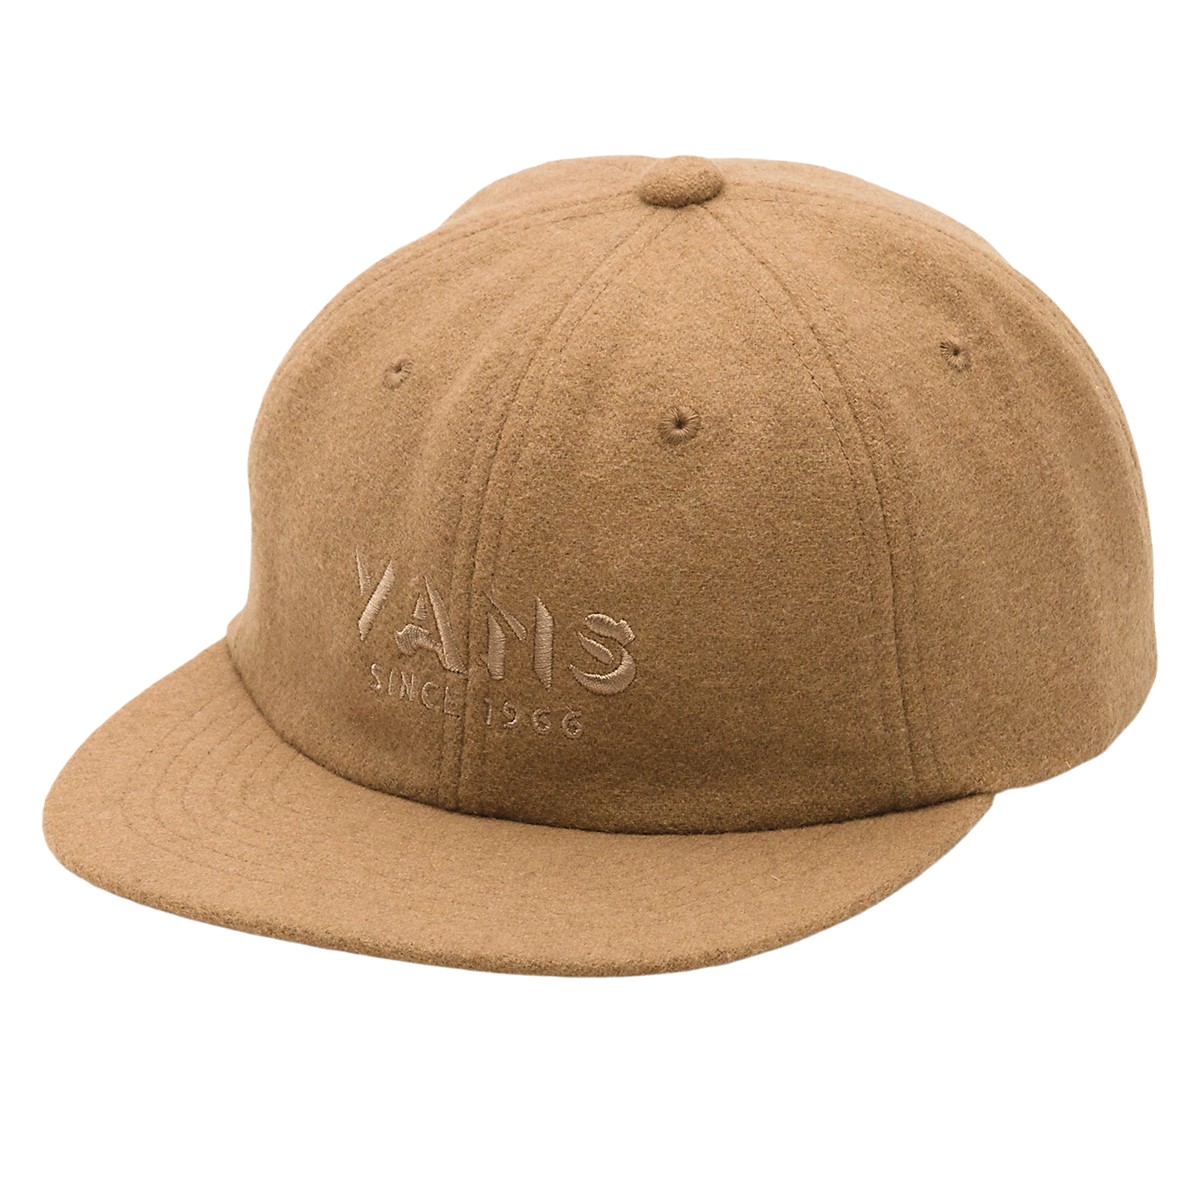 Men's Clark Vintage Unstructured Jockey Hat in Brown